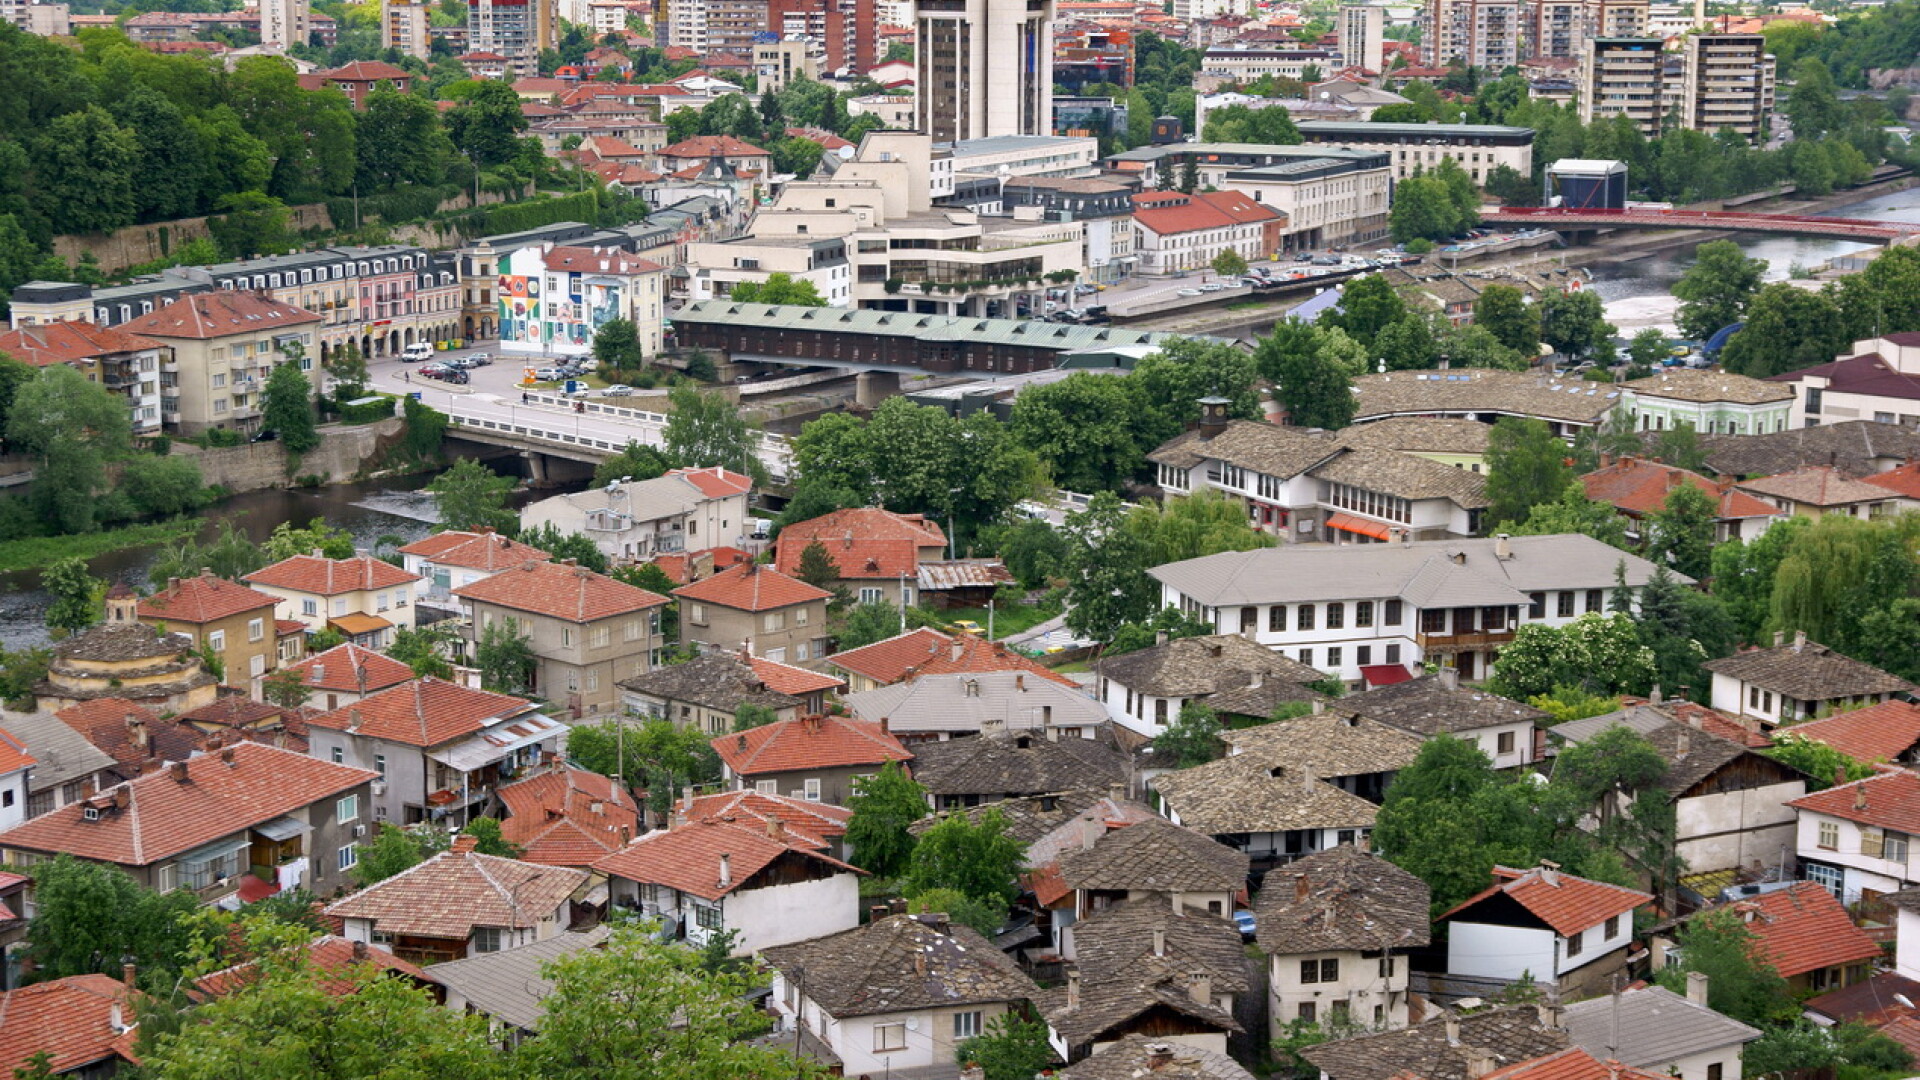 Loveci, Bulgaria